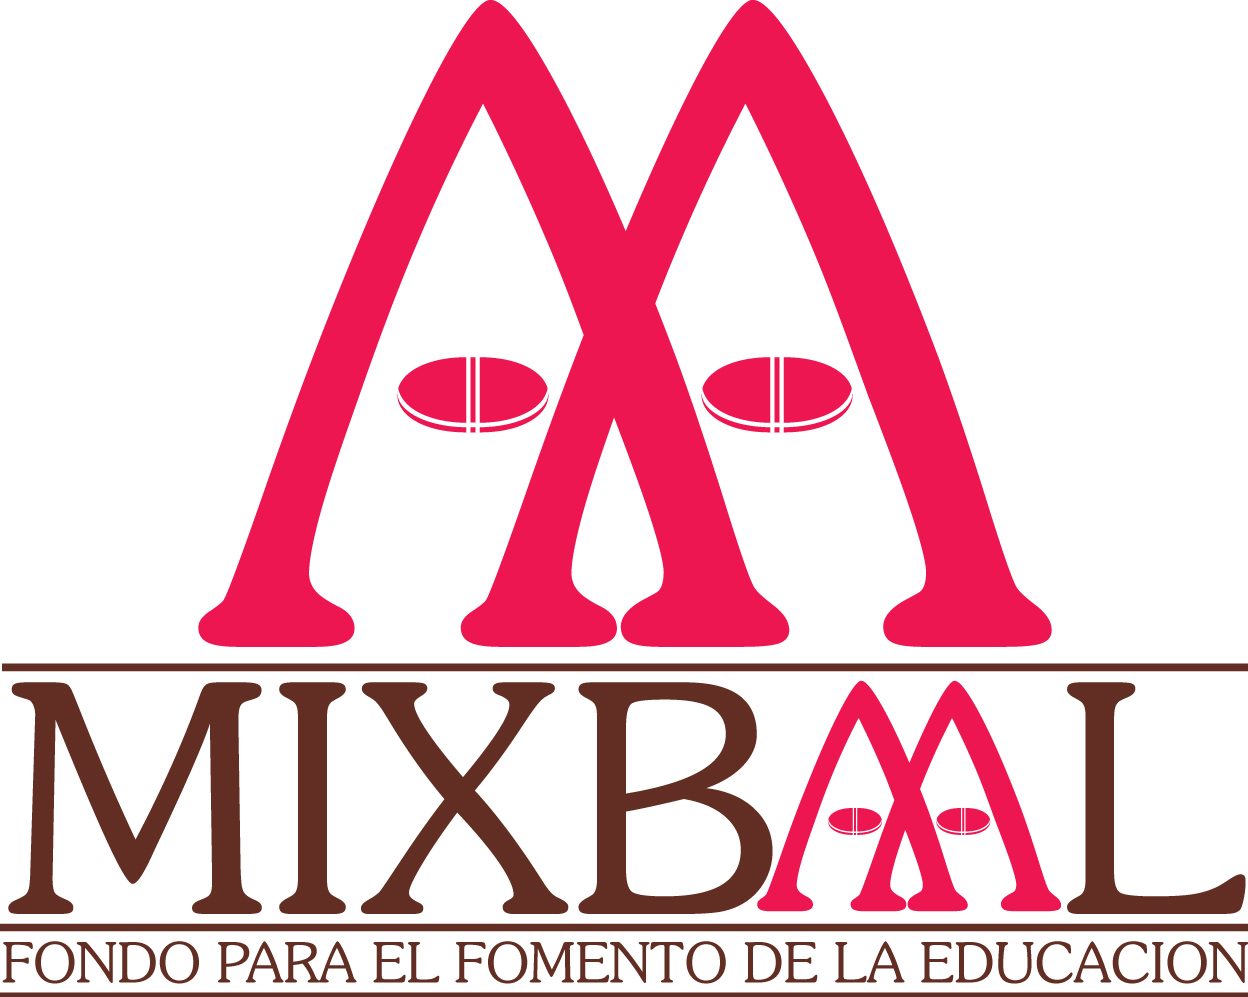 Mixbaal fondo para el fomento de la educación Asociación Civil  